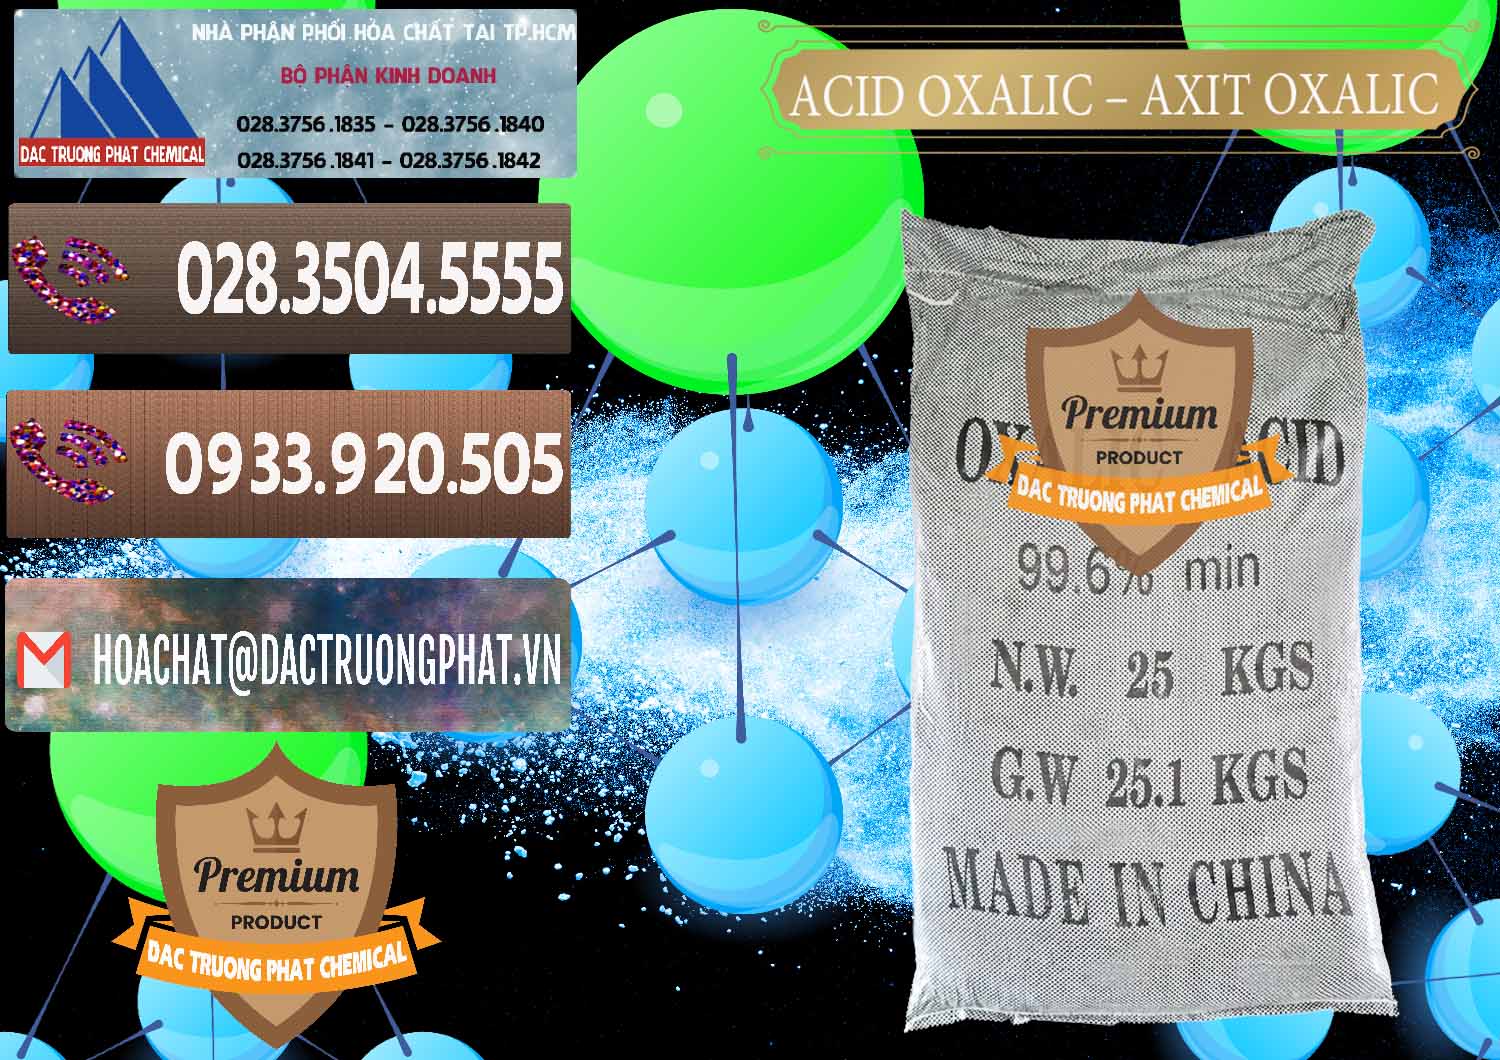 Cty chuyên bán _ cung ứng Acid Oxalic – Axit Oxalic 99.6% Trung Quốc China - 0014 - Nơi cung ứng và phân phối hóa chất tại TP.HCM - hoachatviet.net